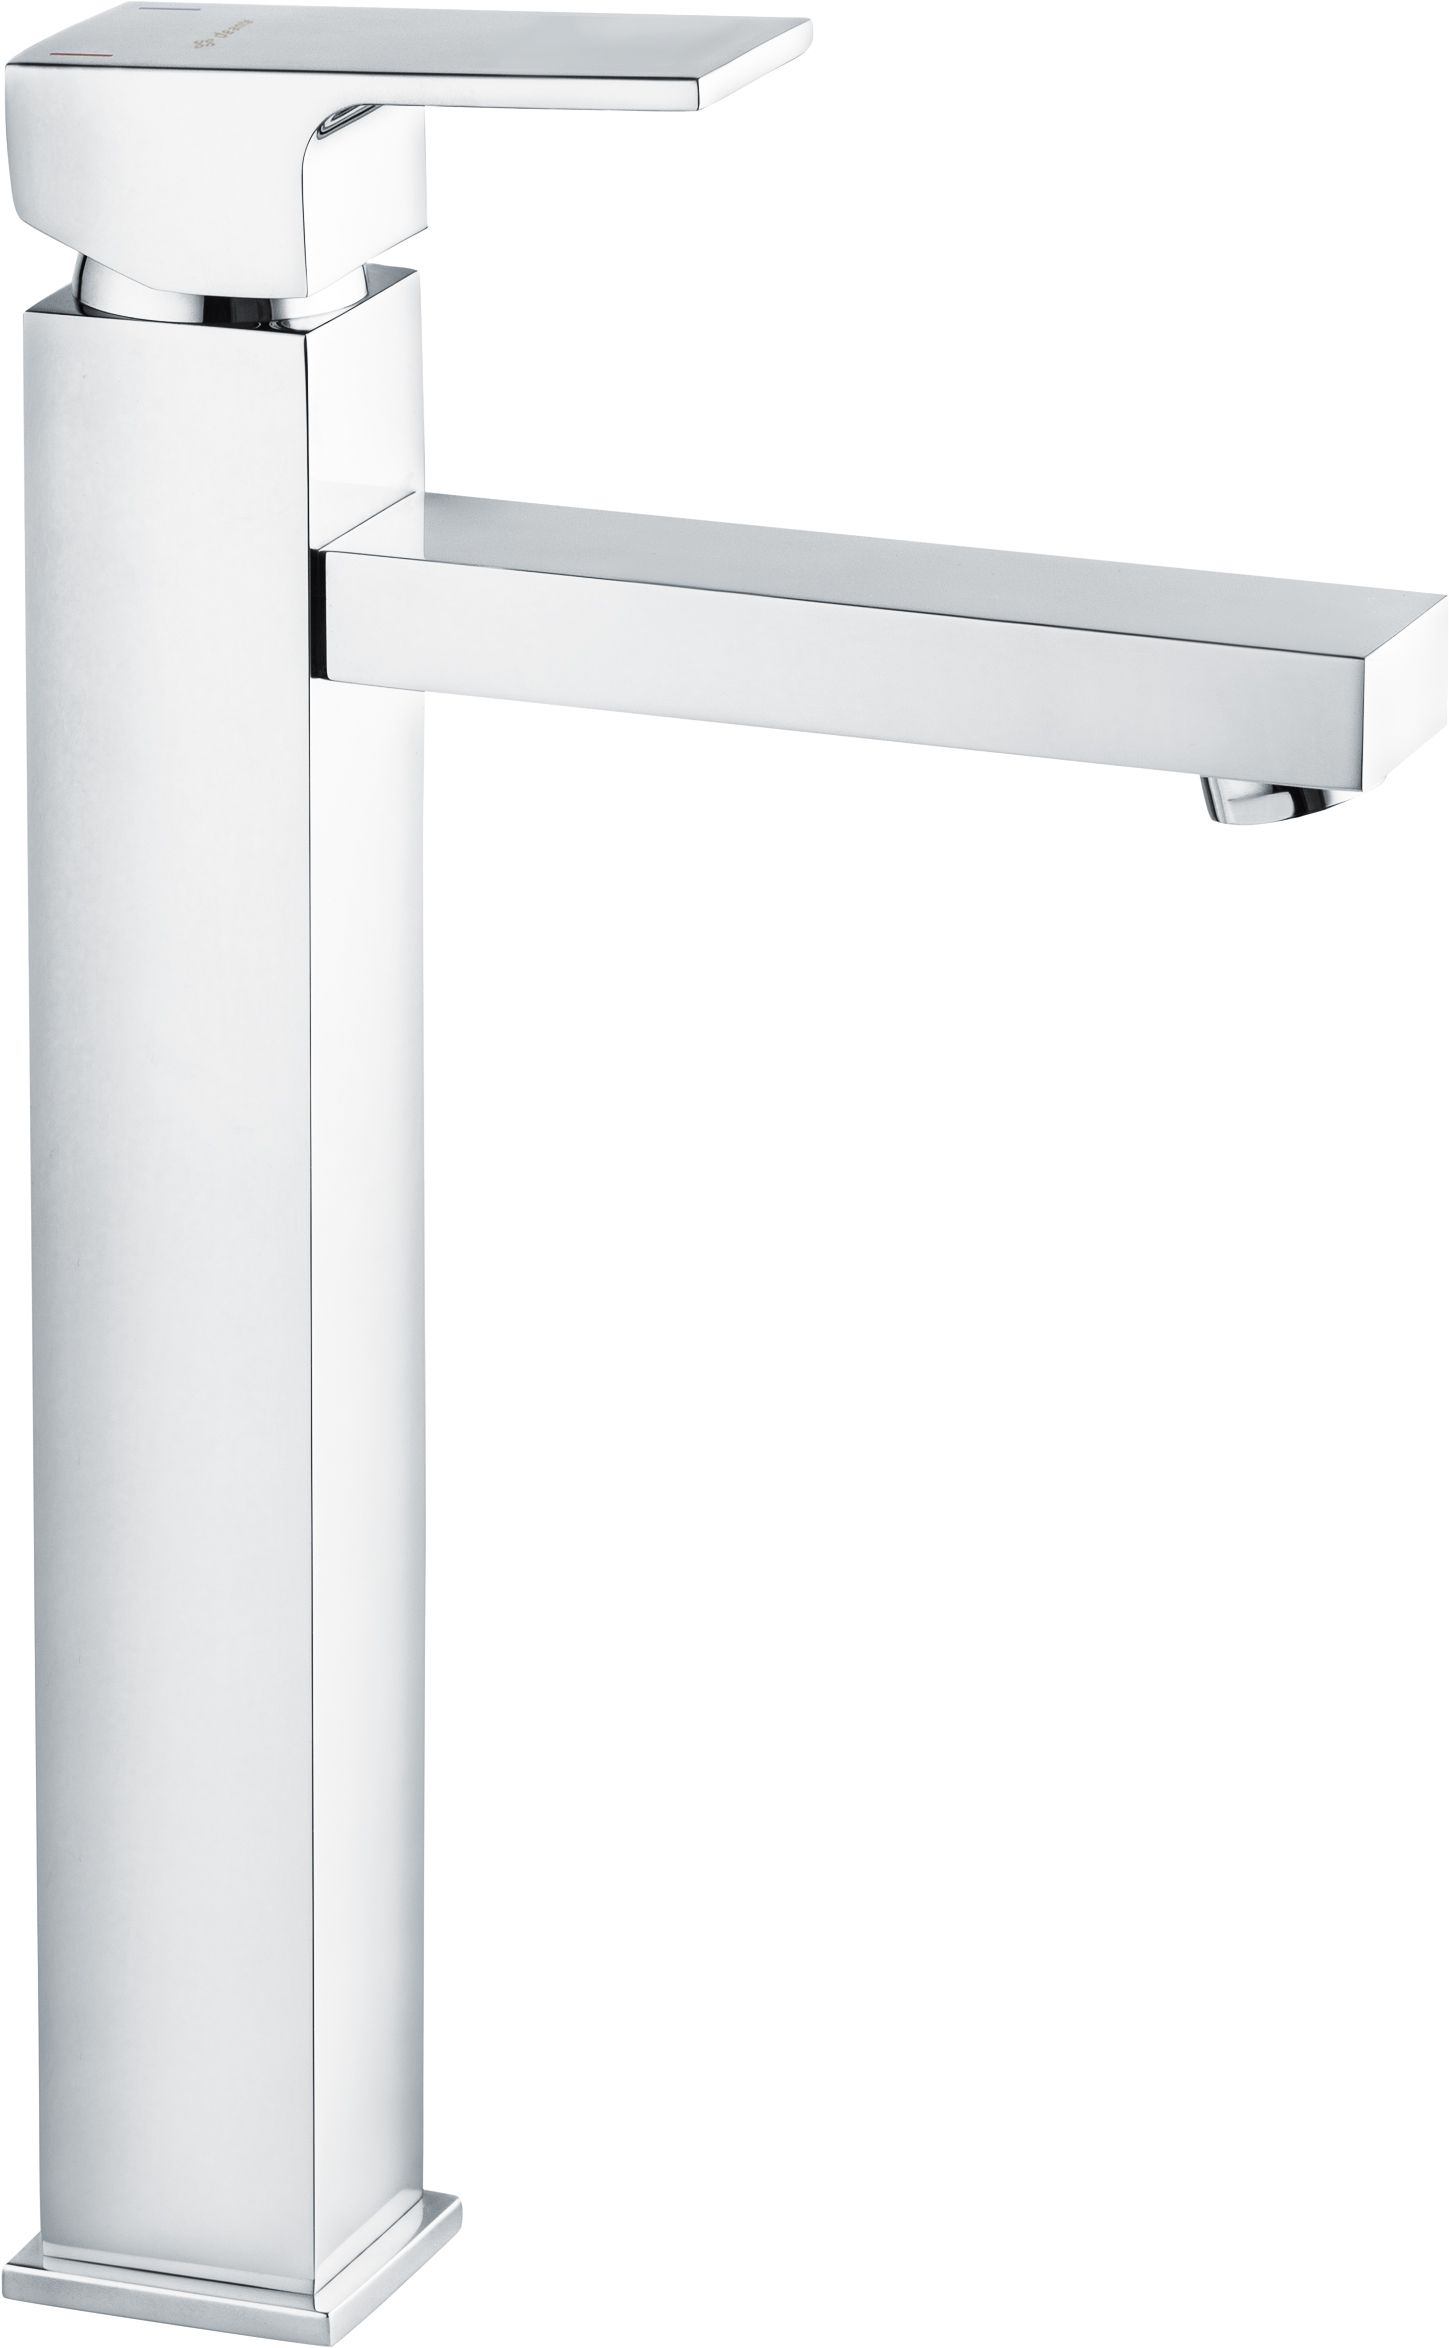 Washbasin tap, tall - BCZ_021K - Główne zdjęcie produktowe